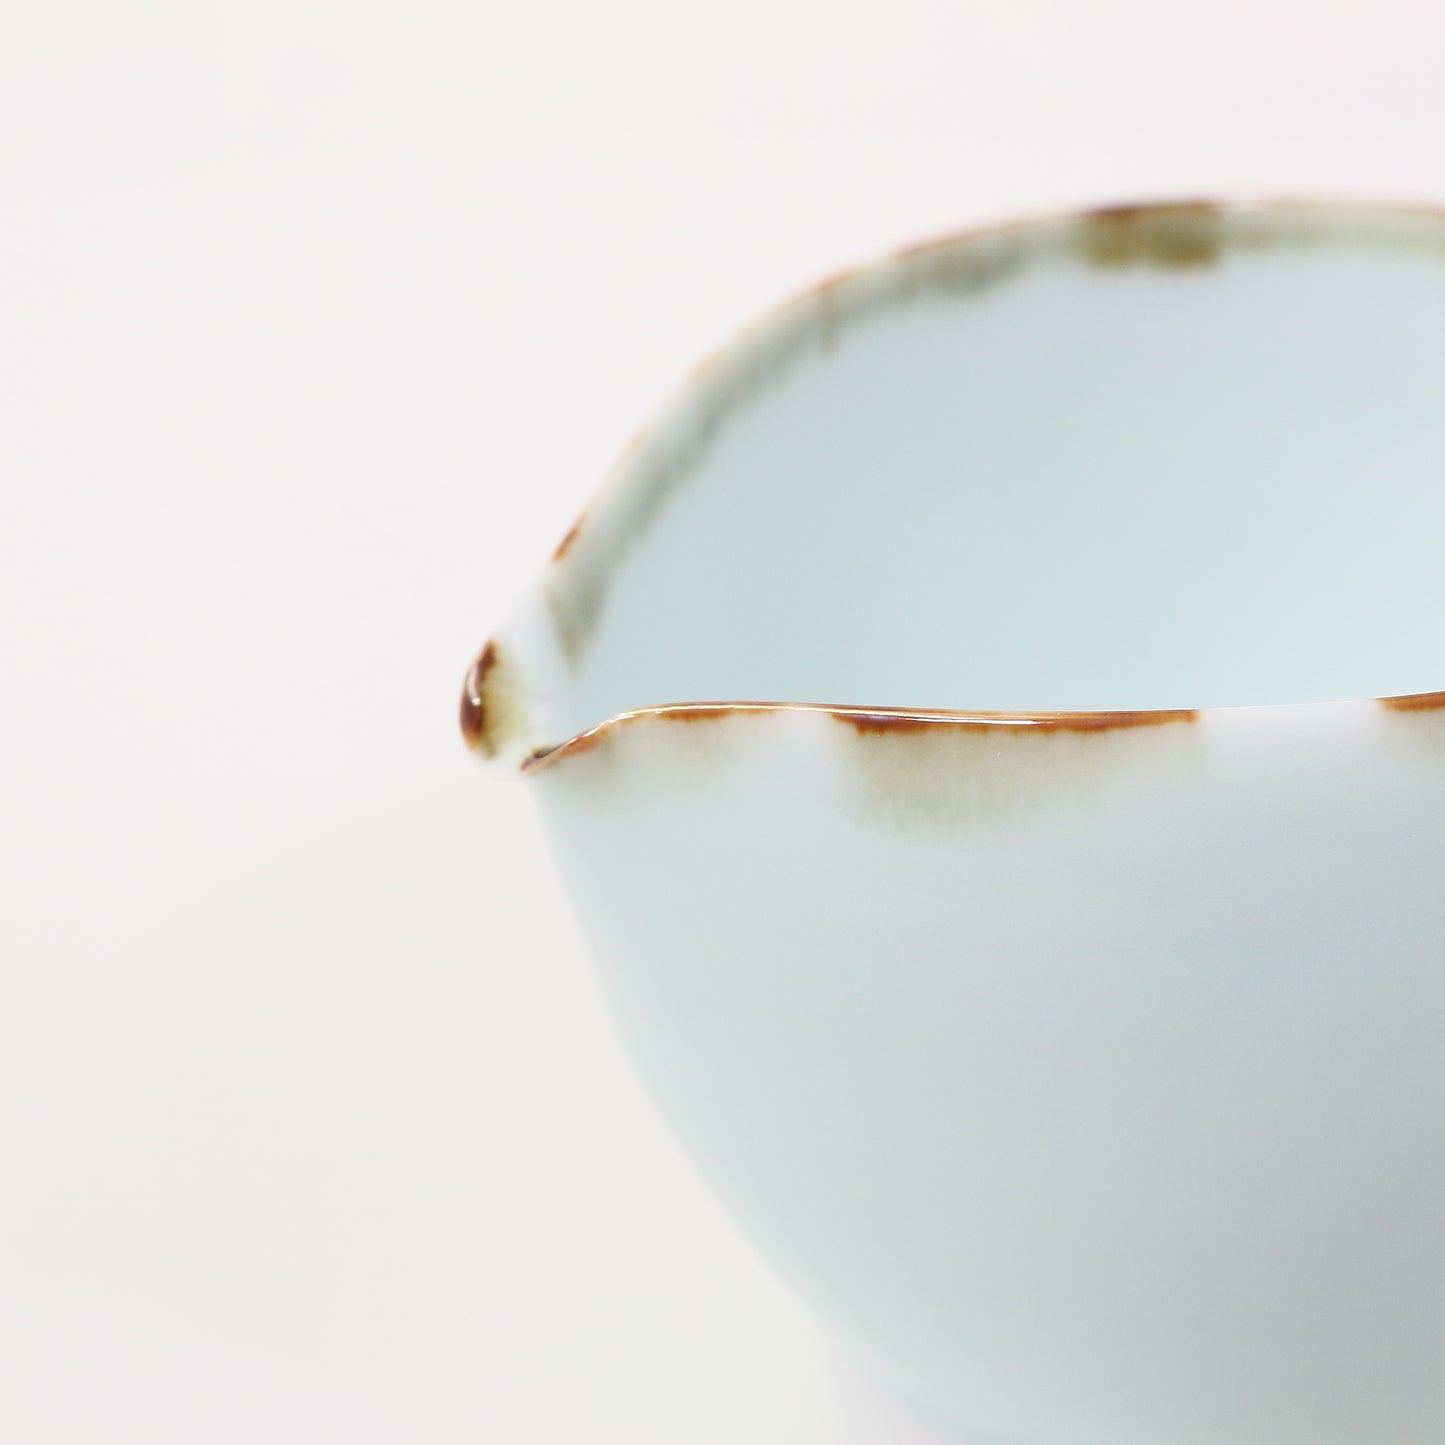 Arita ware | Akio Momota | rust glaze, single spouted form